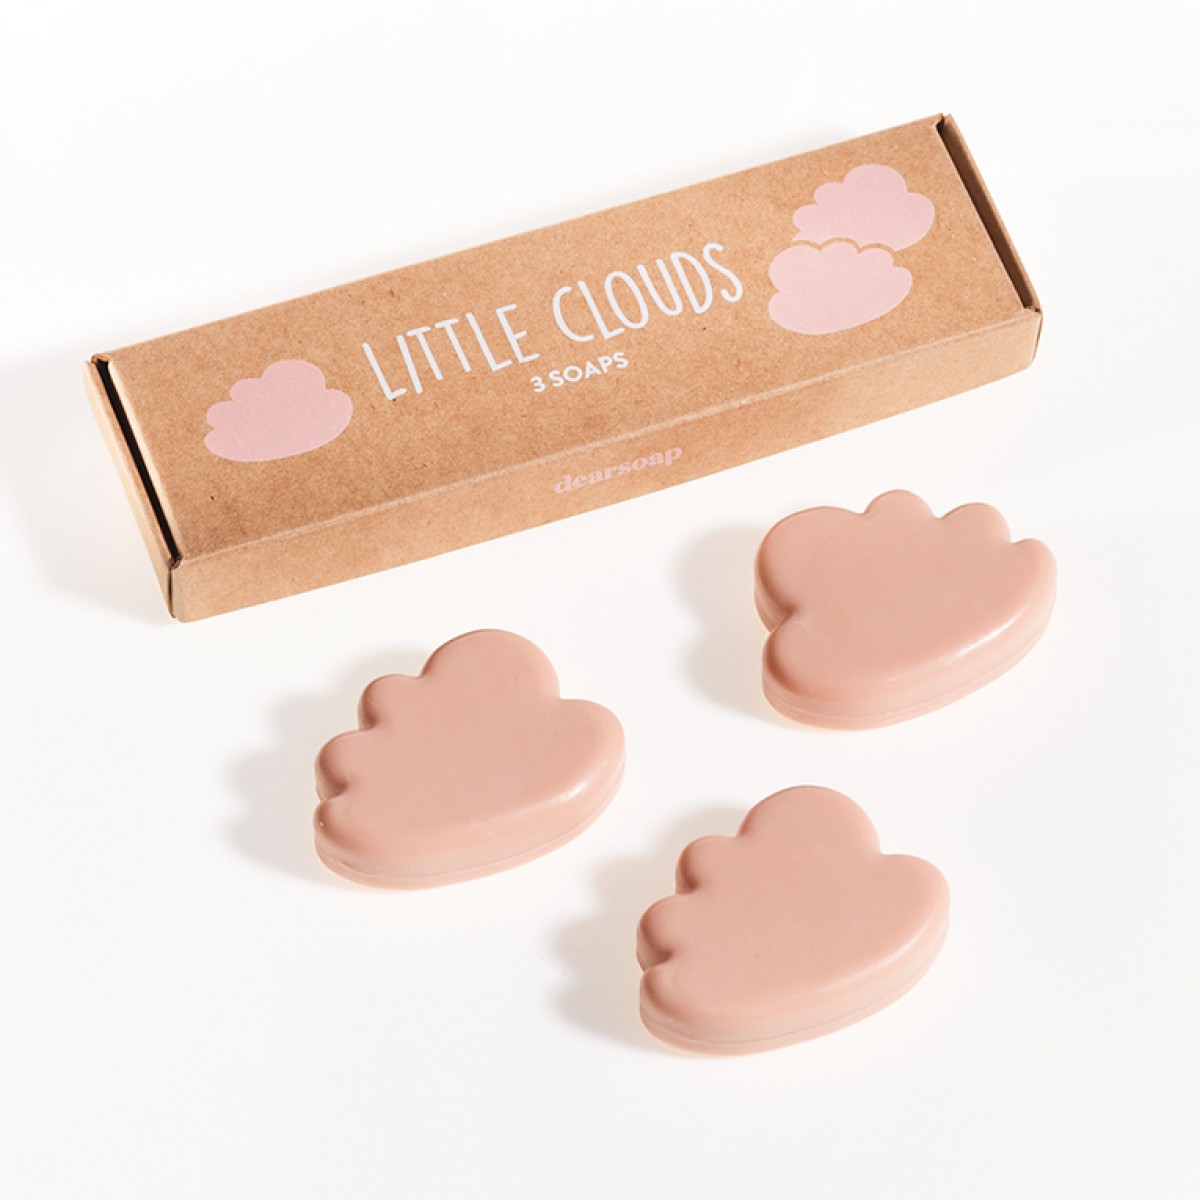 Little Clouds - rosé - von dearsoap